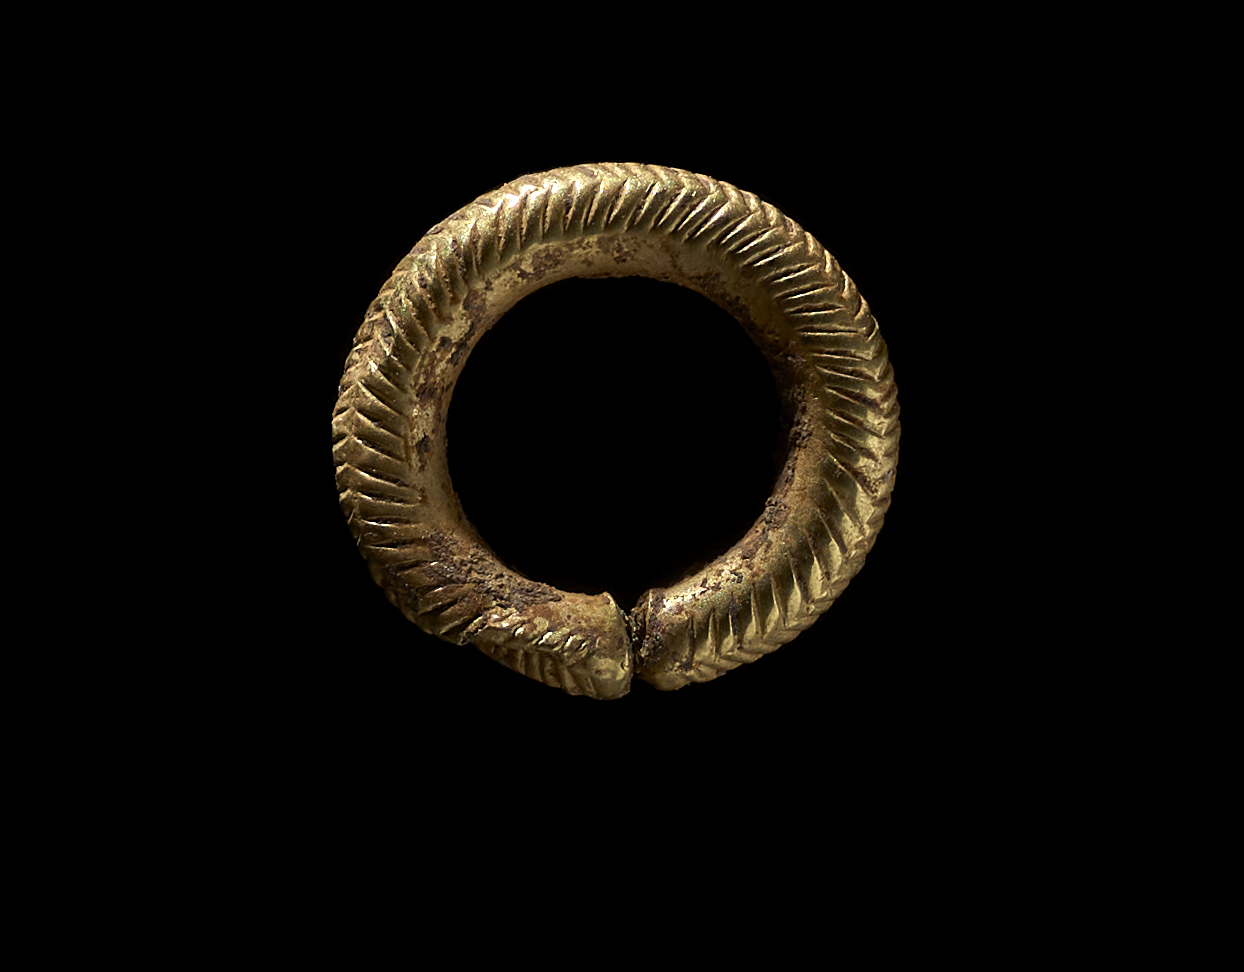 Zu den weiteren ausgegrabenen Gegenständen gehörte ein goldener Haarring, der Experten zufolge darauf hindeutet, dass sein Besitzer über ein hohes relatives Vermögen verfügte